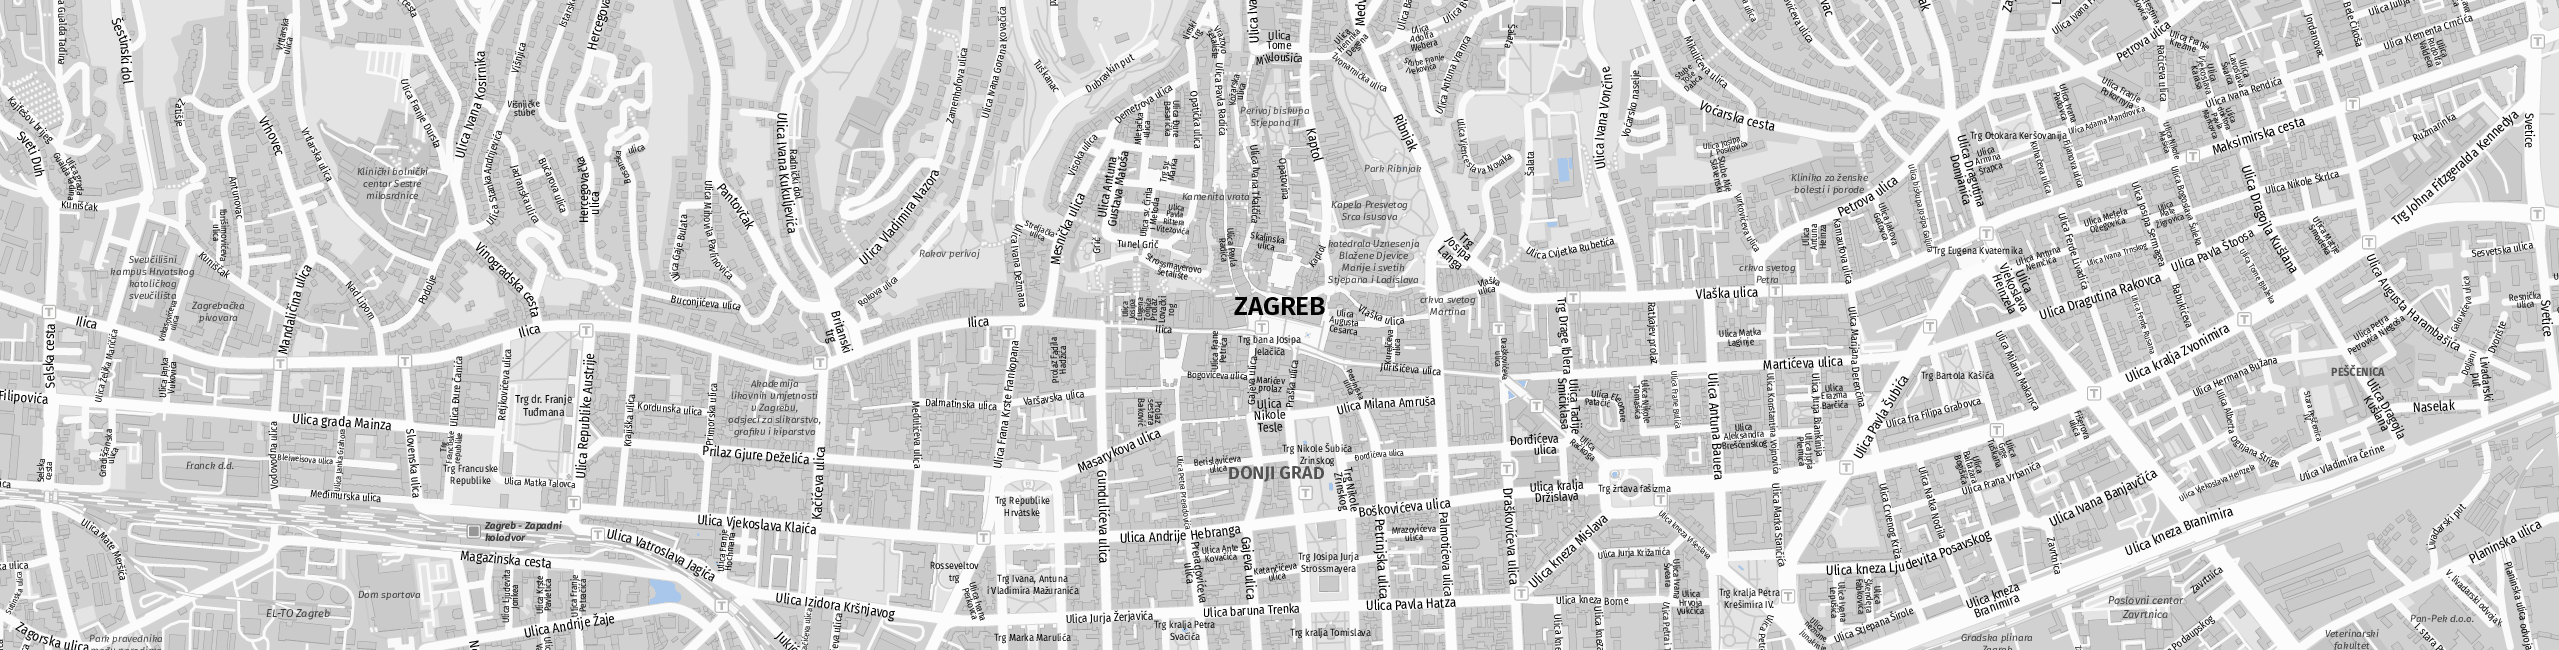 Stadtplan Zagreb zum Downloaden.